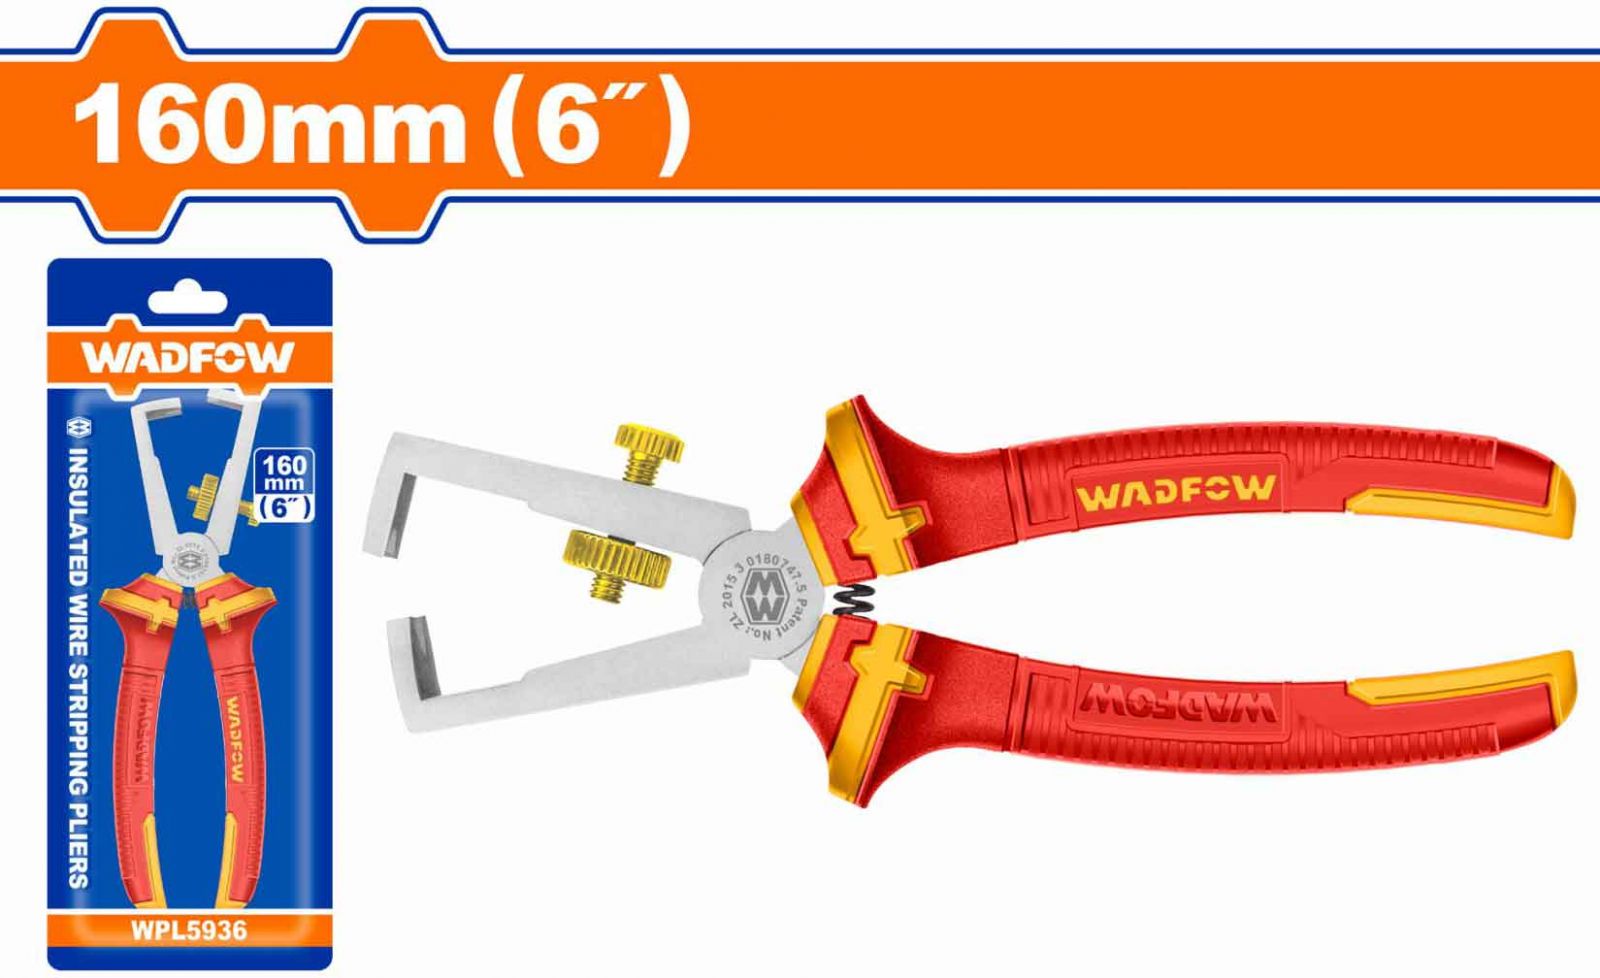 Hình ảnh 1 của mặt hàng Kềm tuốt dây điện cách điện 6" Wadfow WPL5936